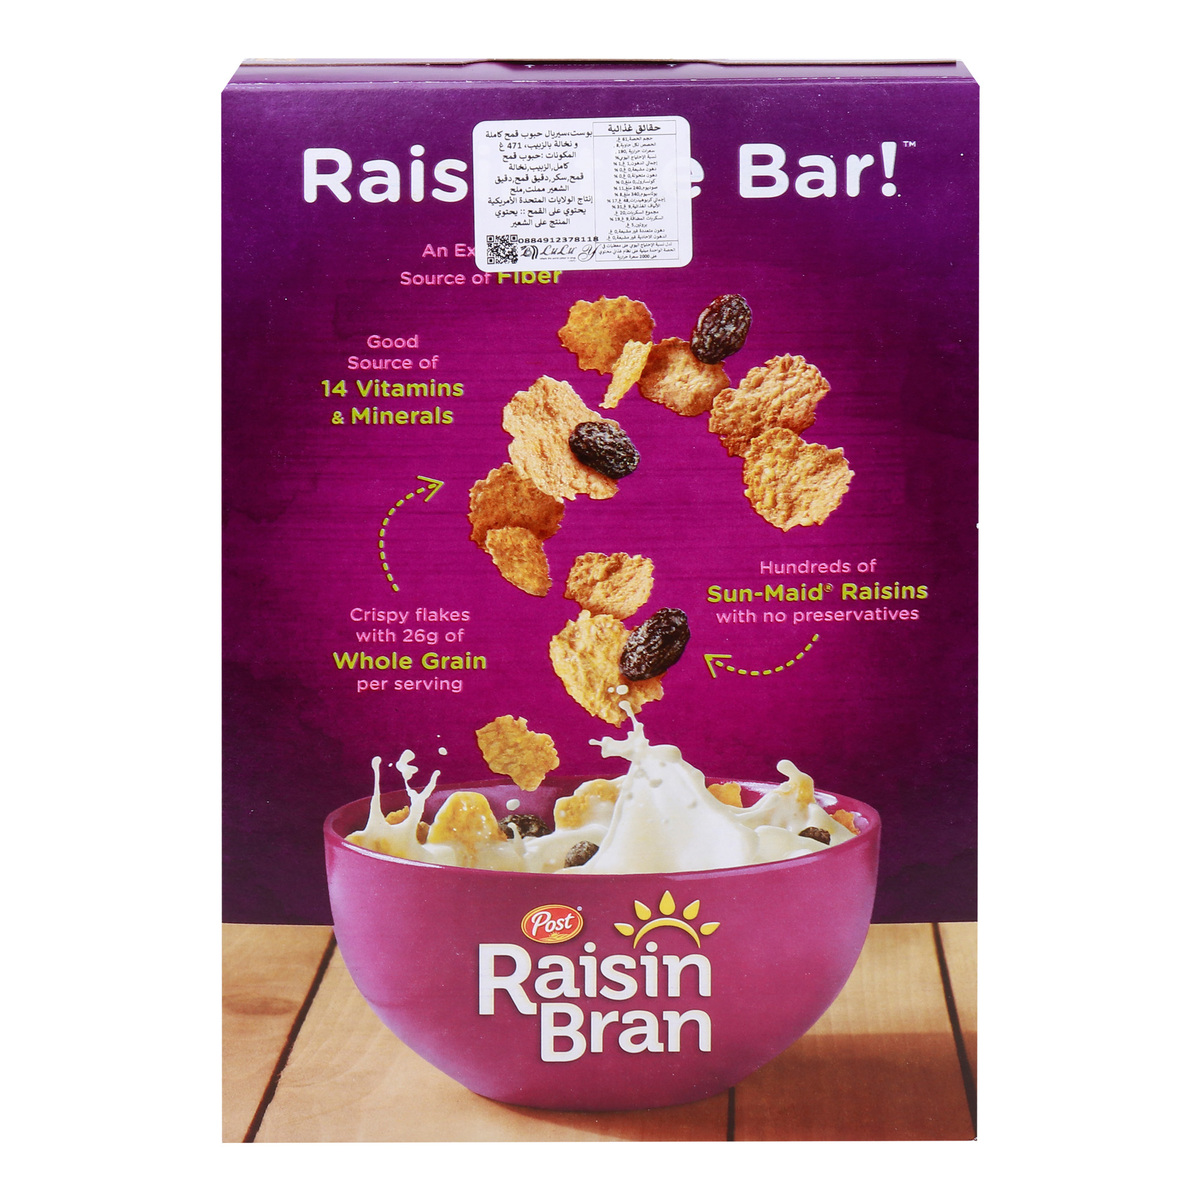 Post Raisin Bran Whole Grain Wheat and Bran Cereal, 471 g